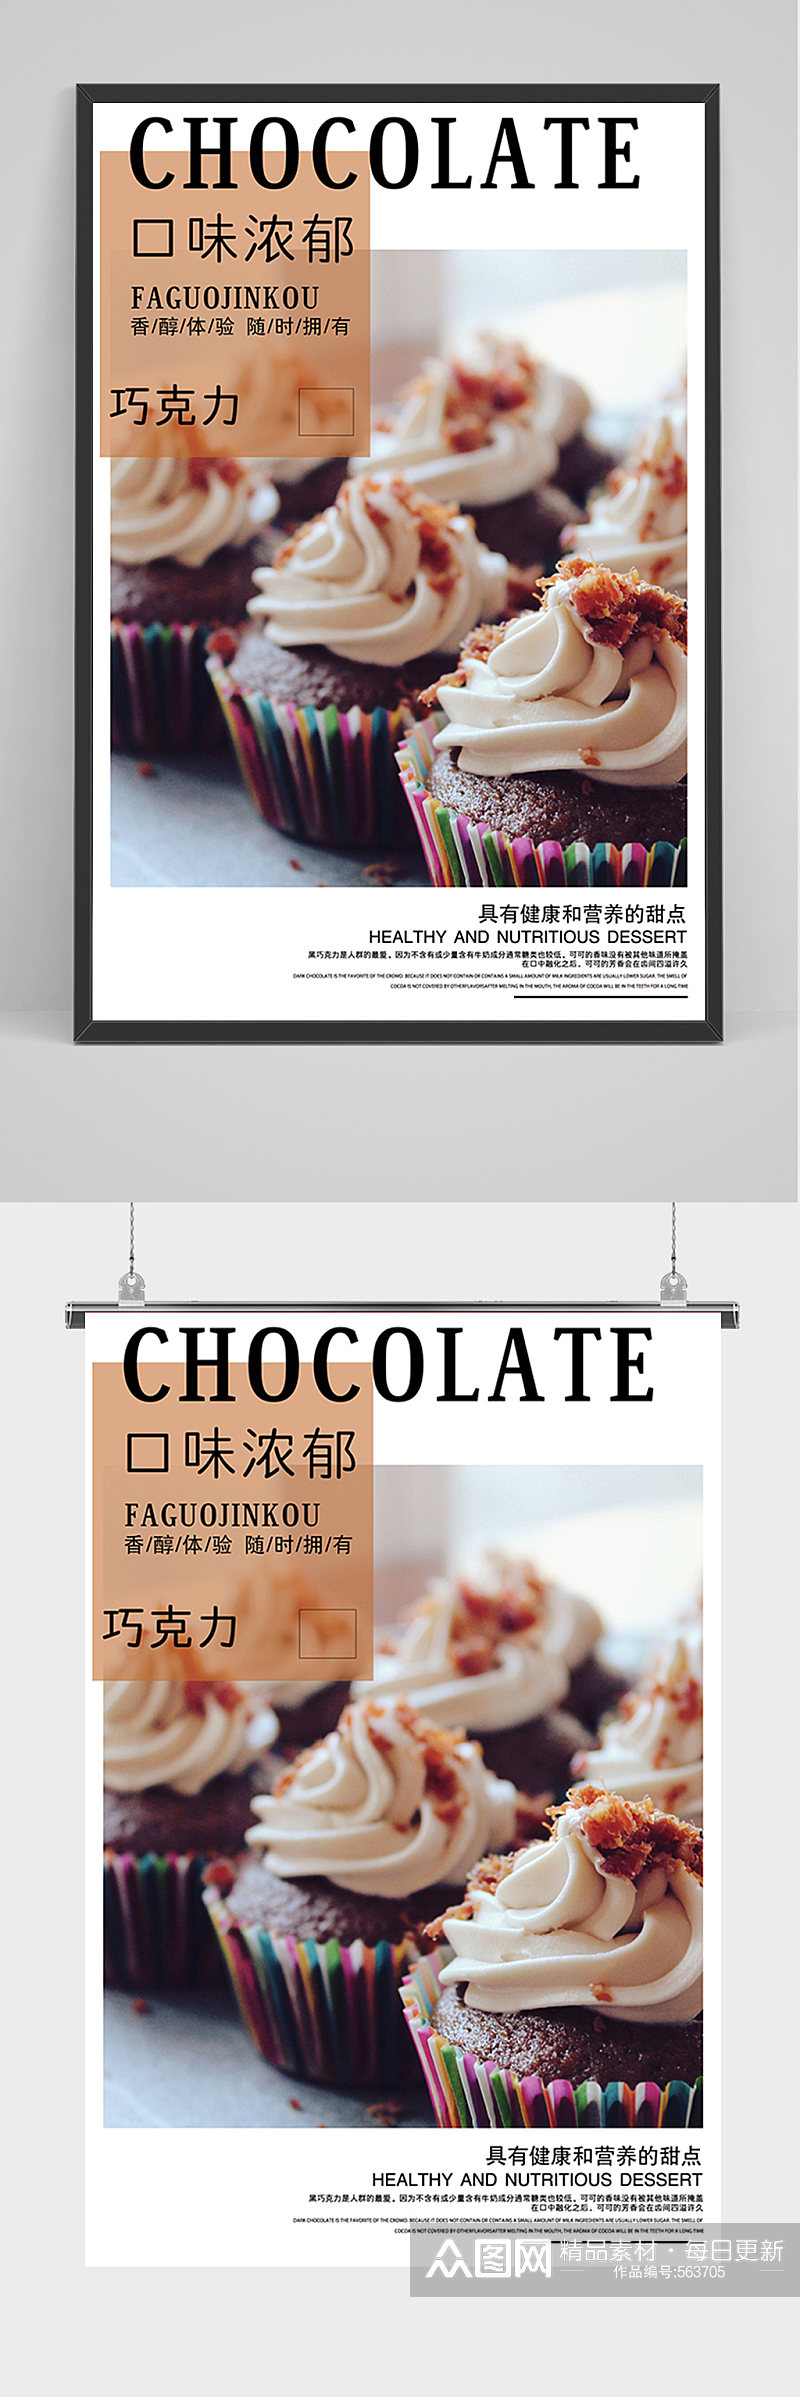 美食巧克力甜品海报素材